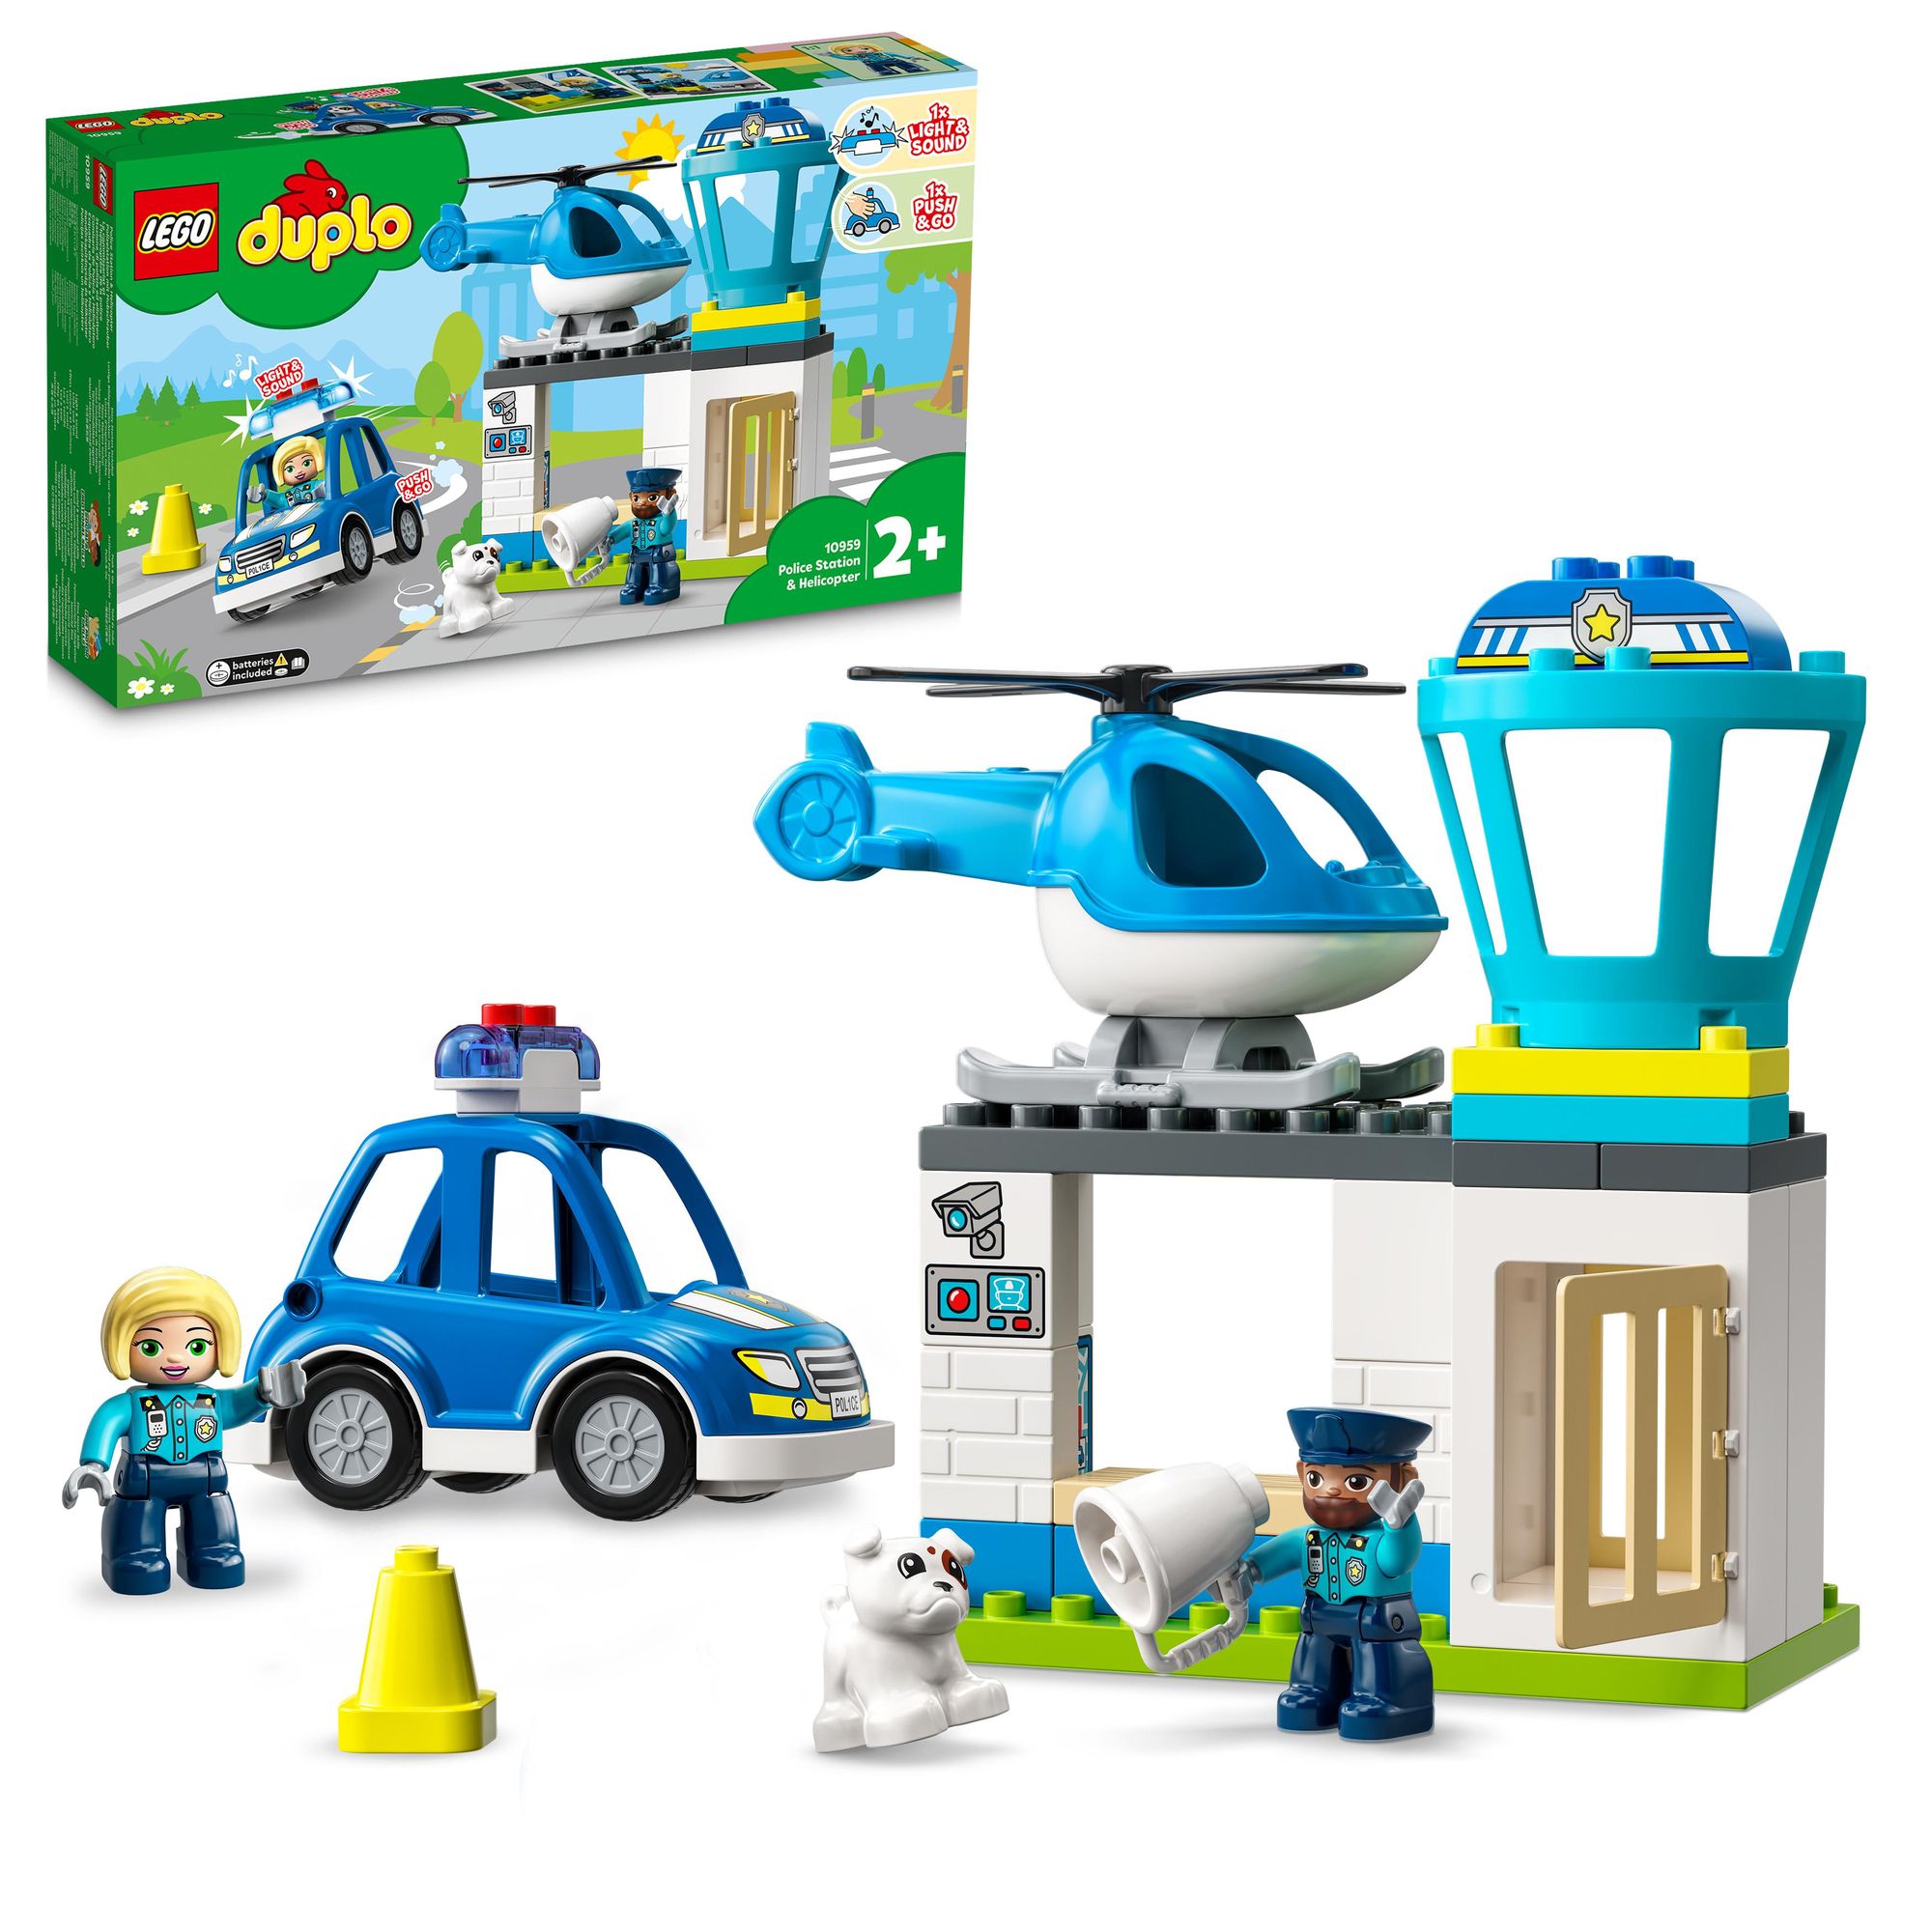 LEGO DUPLO 10959 Polizeistation mit Hubschrauber, Polizei-Spielzeug' kaufen  - Spielwaren